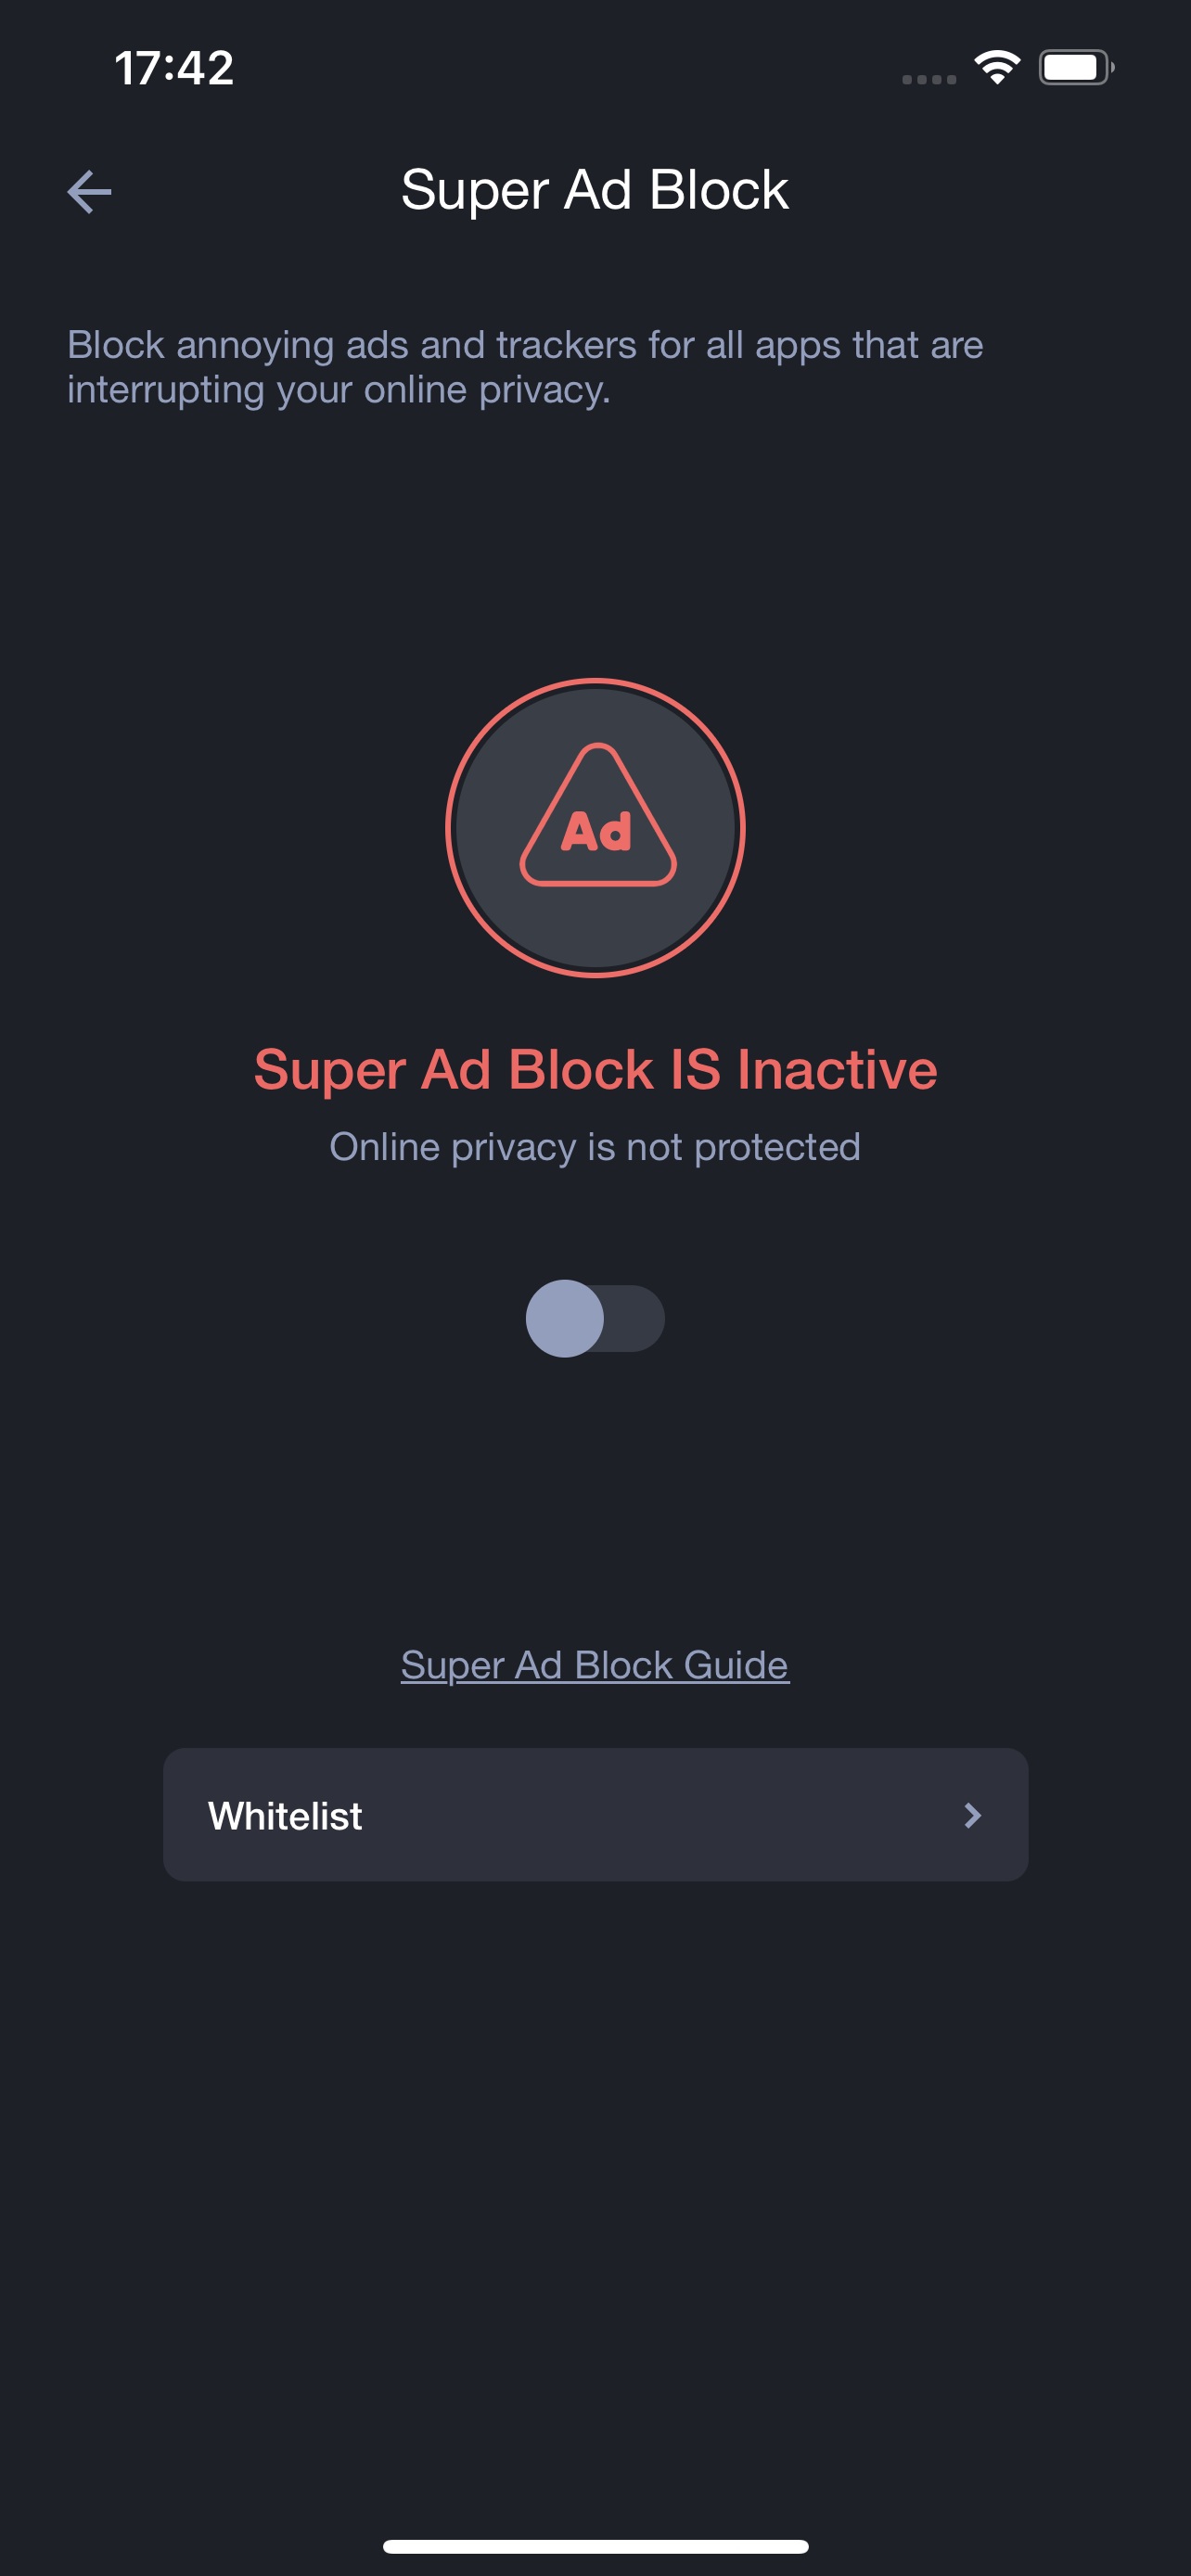 images/Ad Block